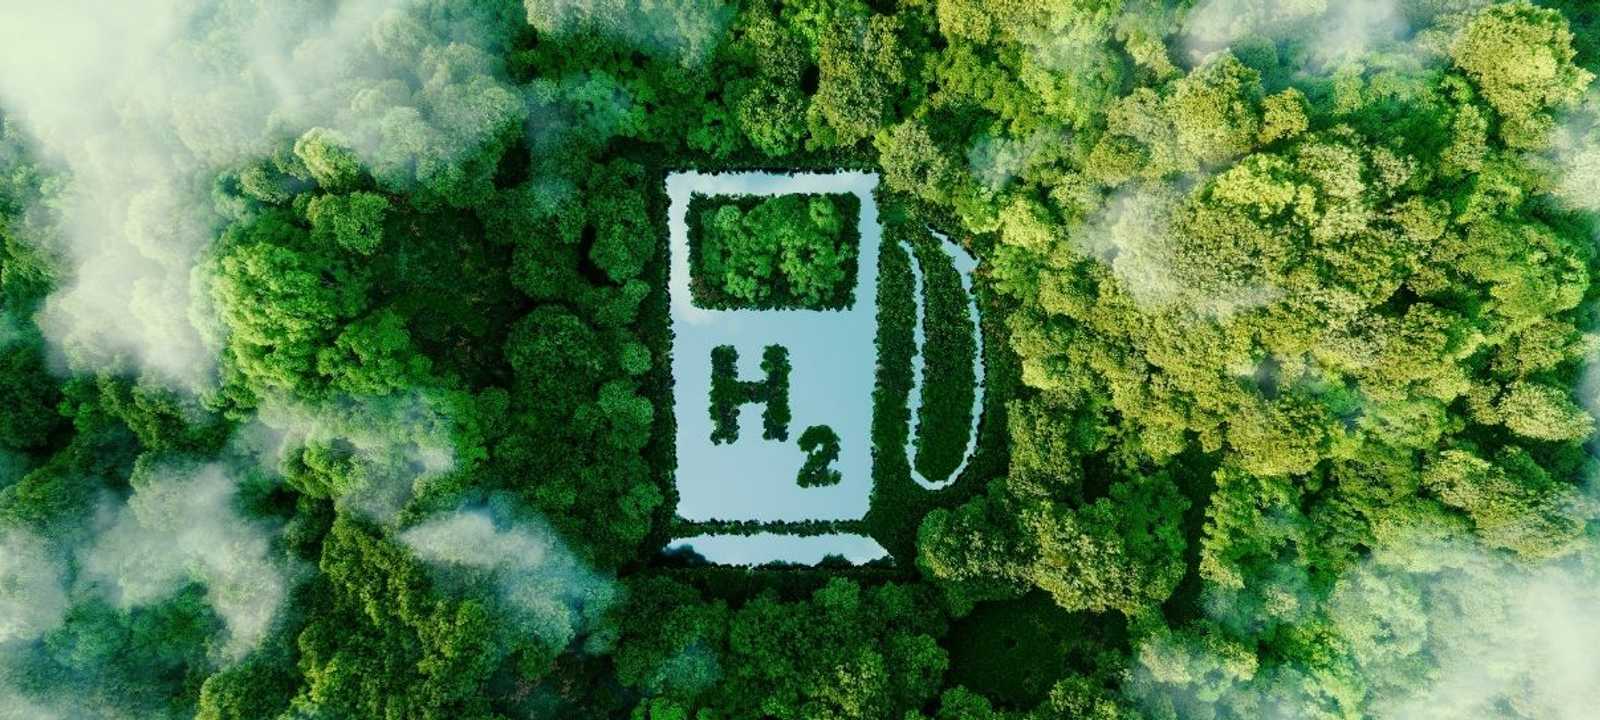 الهيدروجين الأخضر